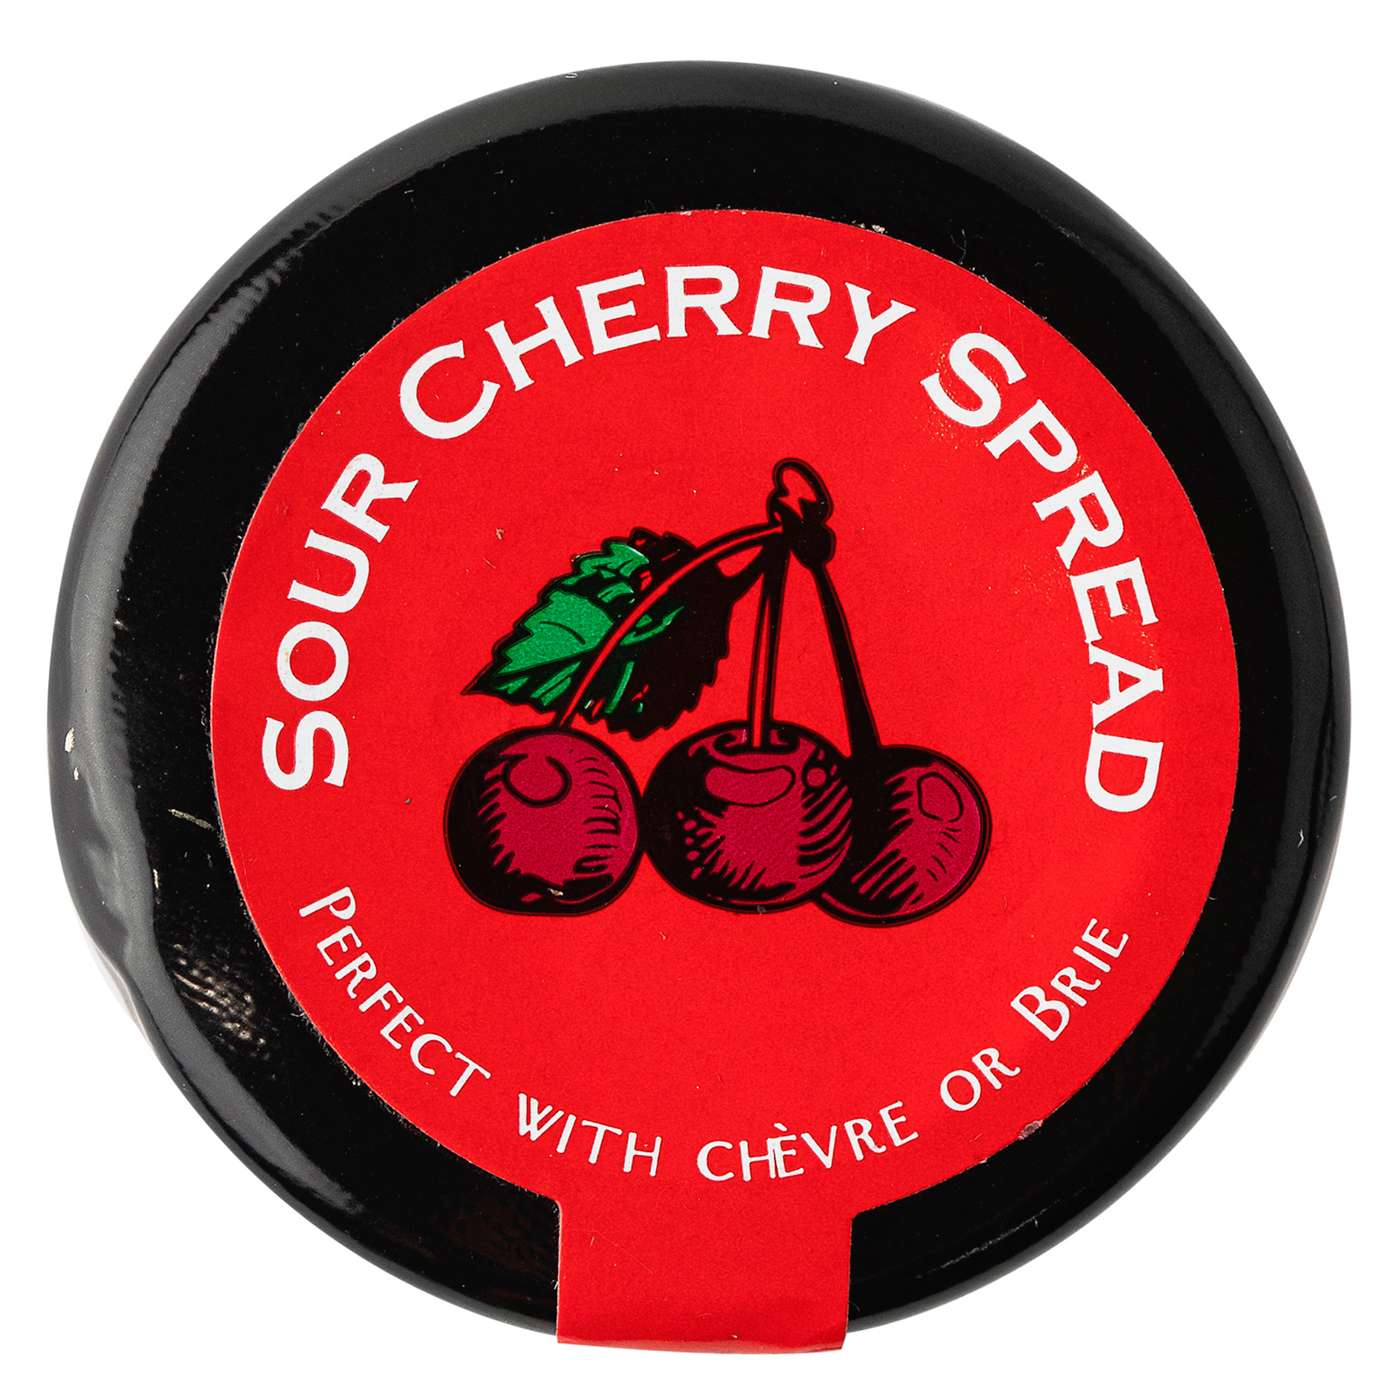 Dalmatia Sour Cherry Spread; image 2 of 2